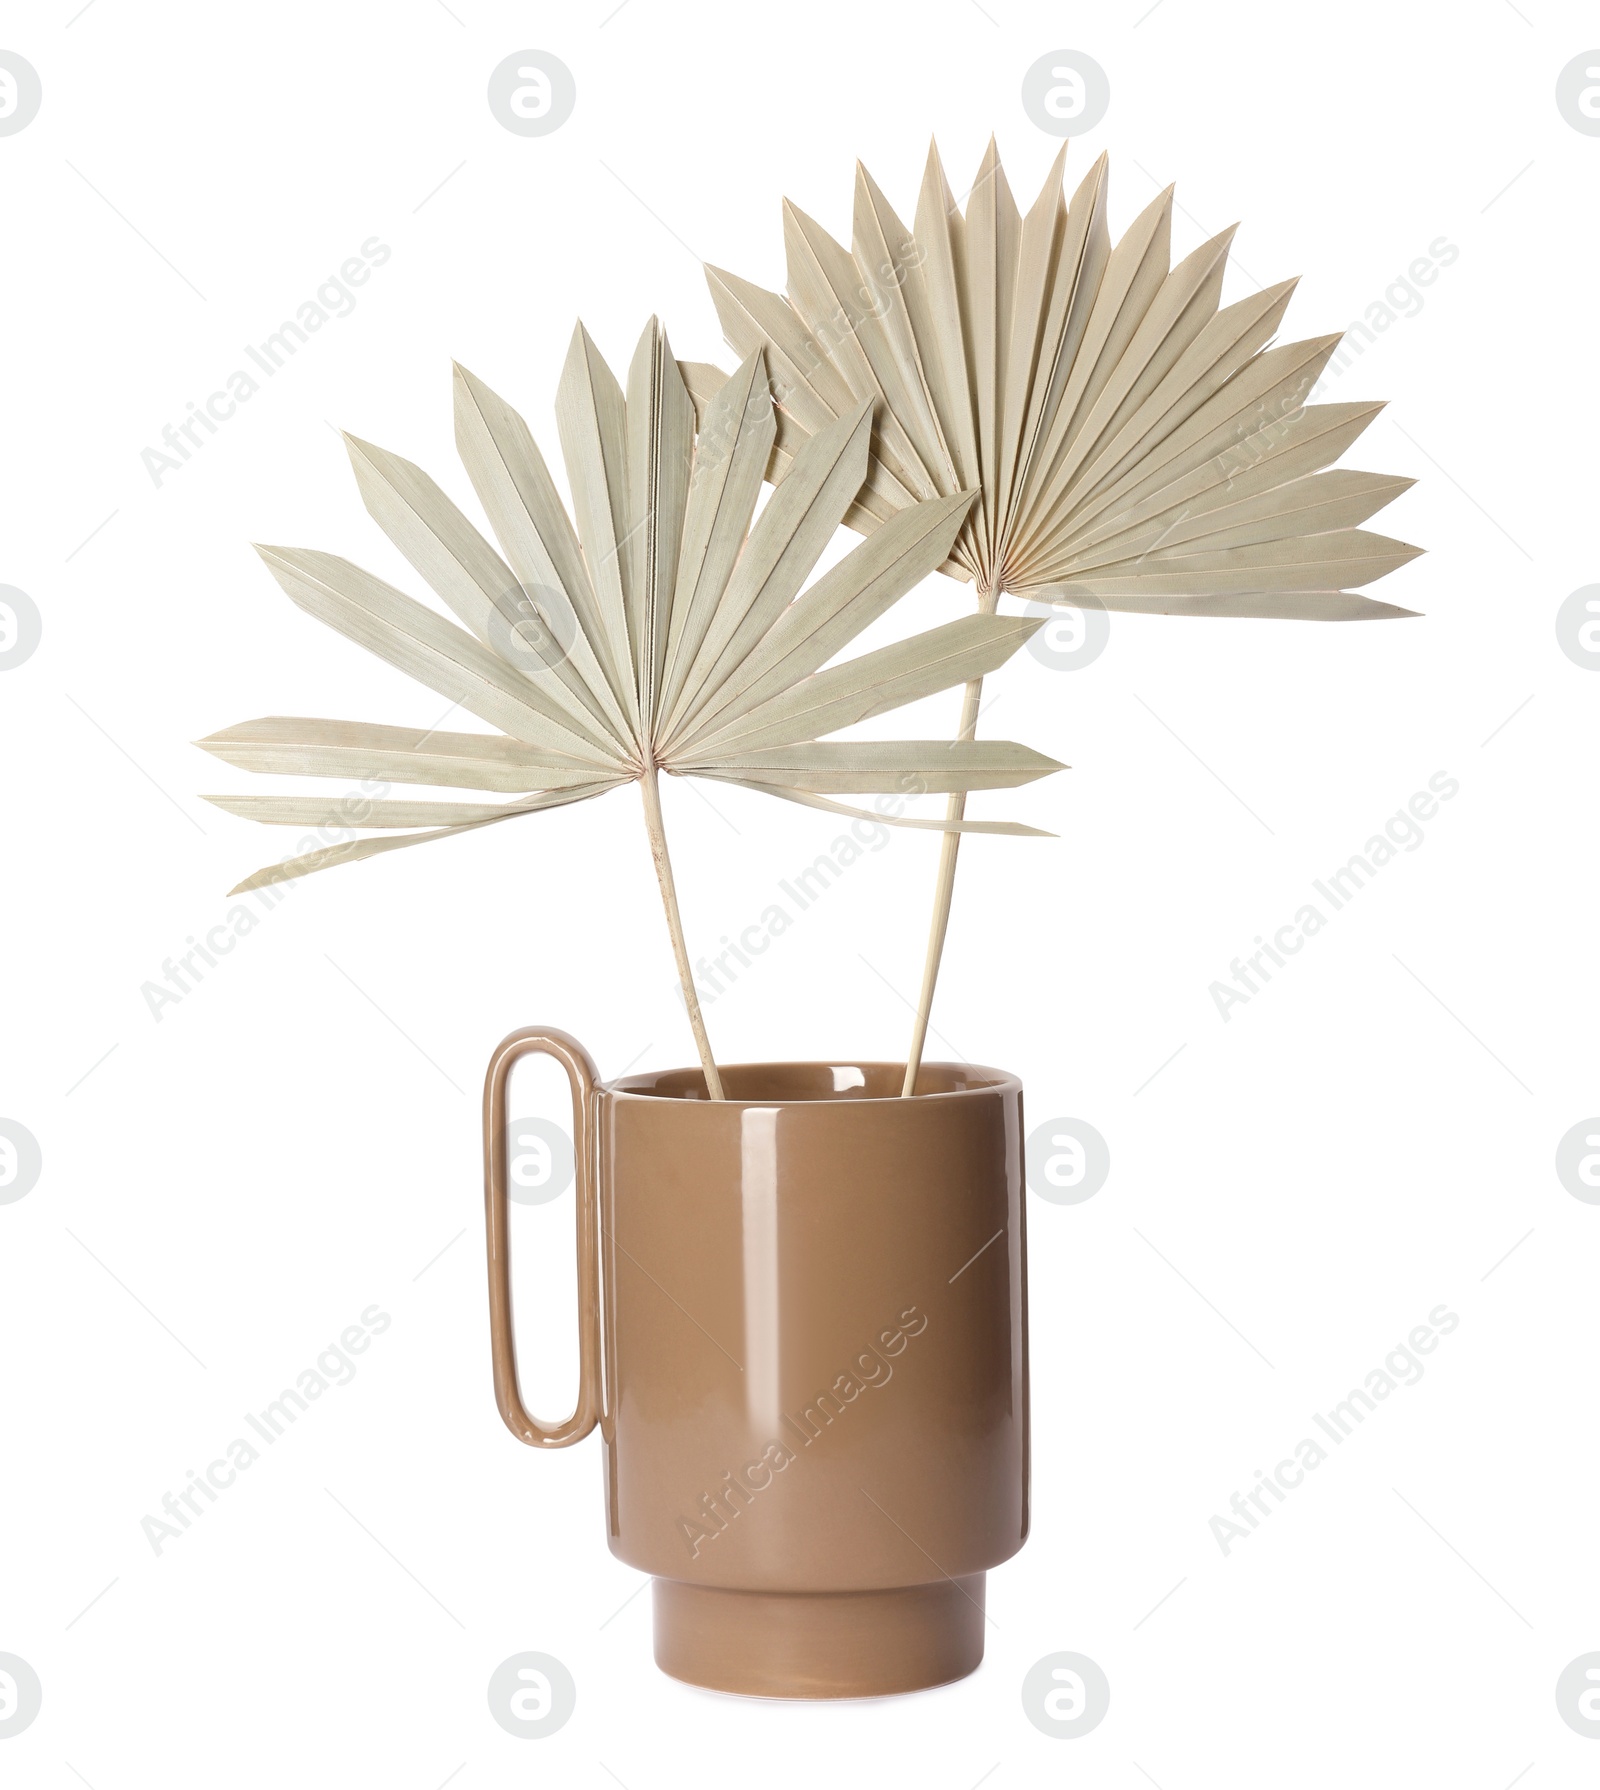 Photo of Stylish ceramic vase with dry leaves on white background